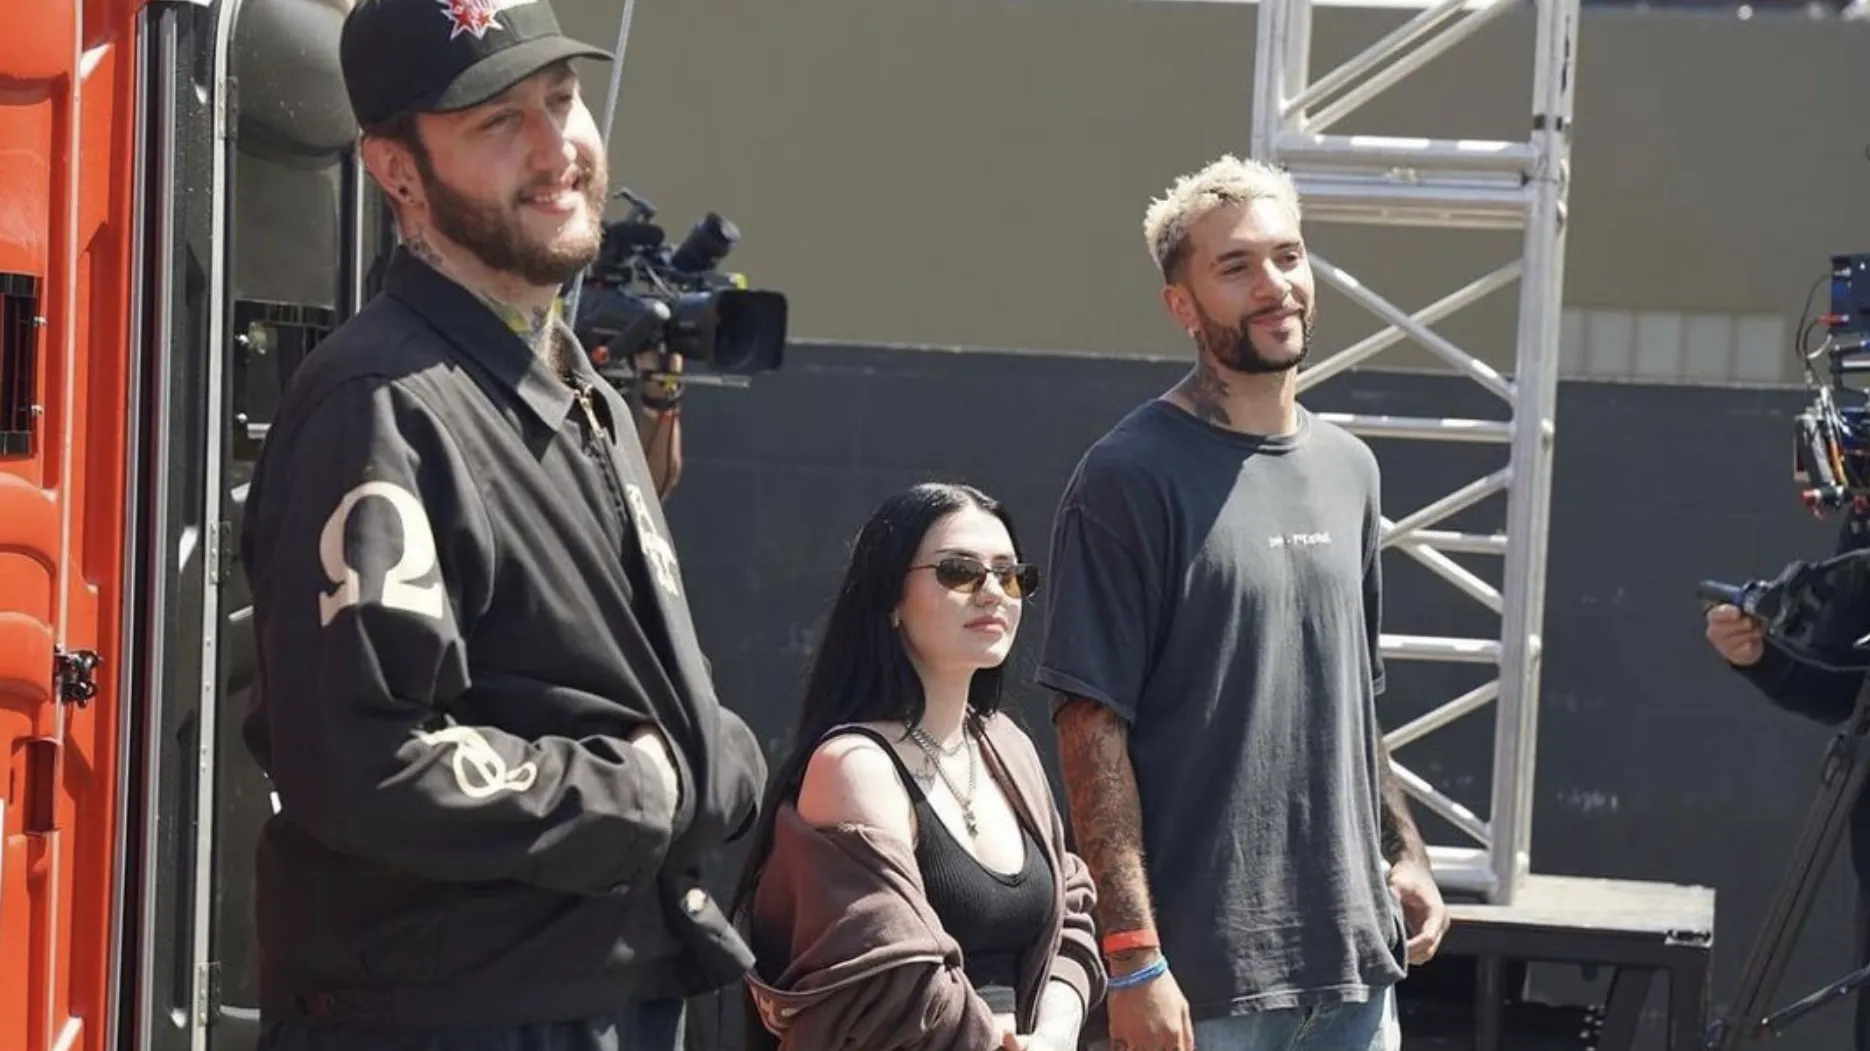 Fotografía de Banks, Kalei y Temperr. Están detrás del escenario en un set de filmación, vistiendo todo de negro.